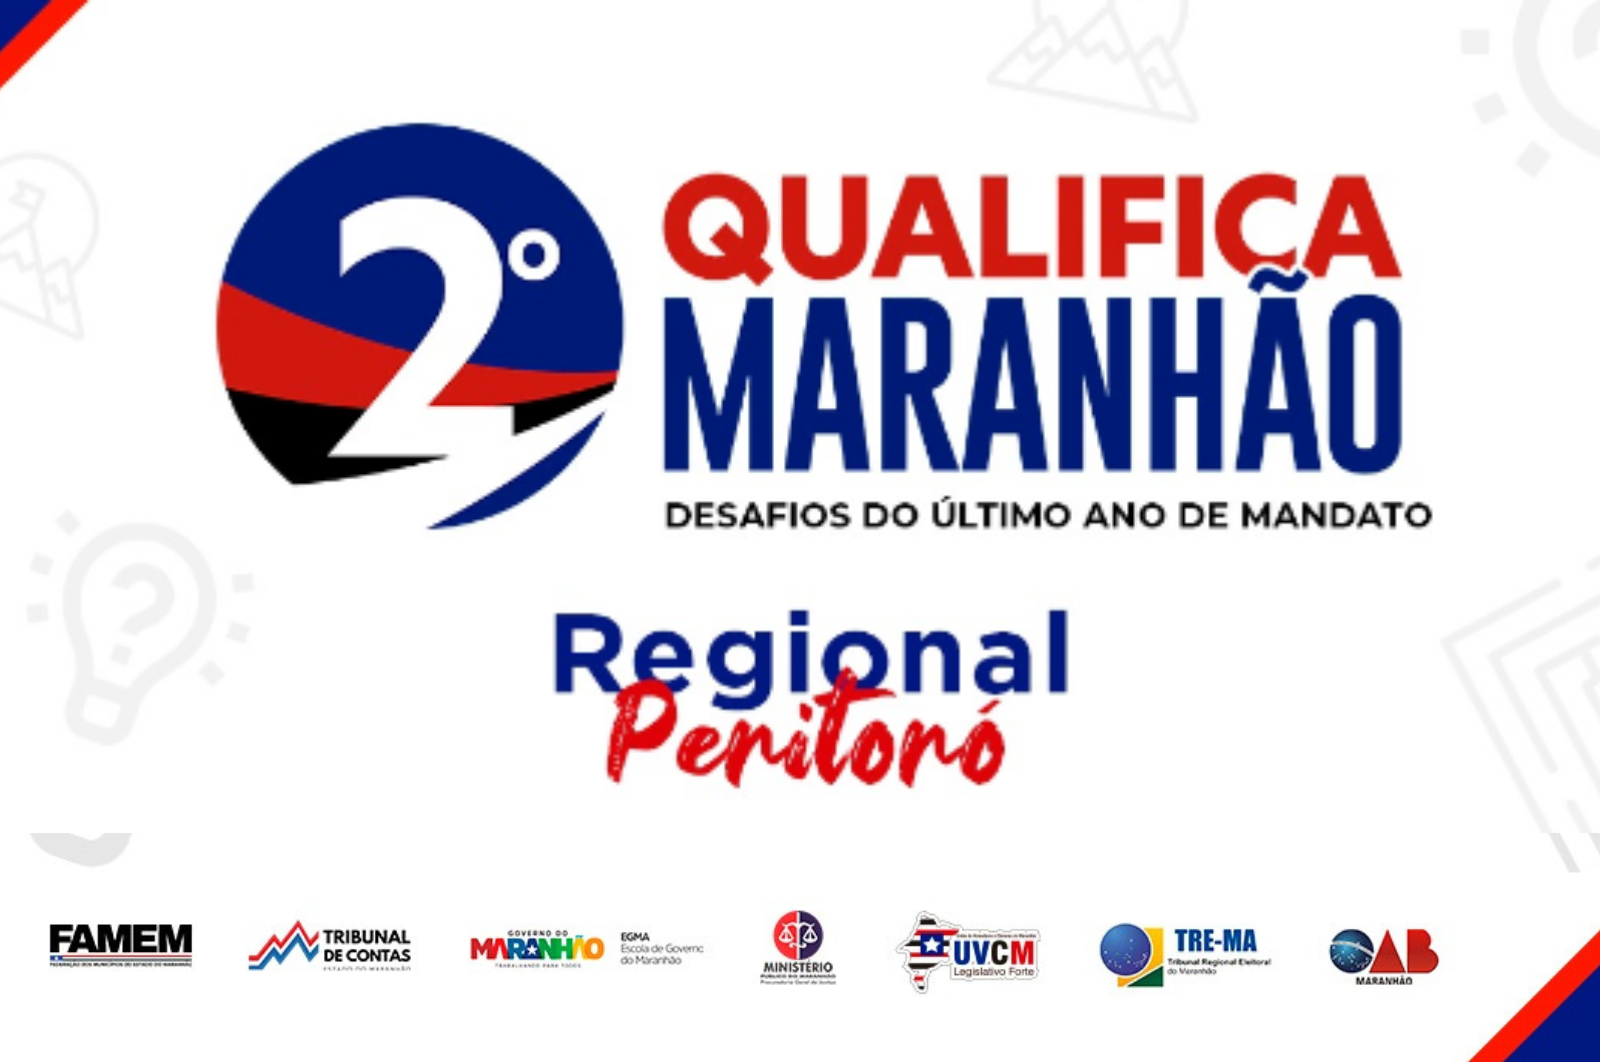 2º Qualifica Maranhão: Desafios do último ano de mandato (Regional Peritoró)